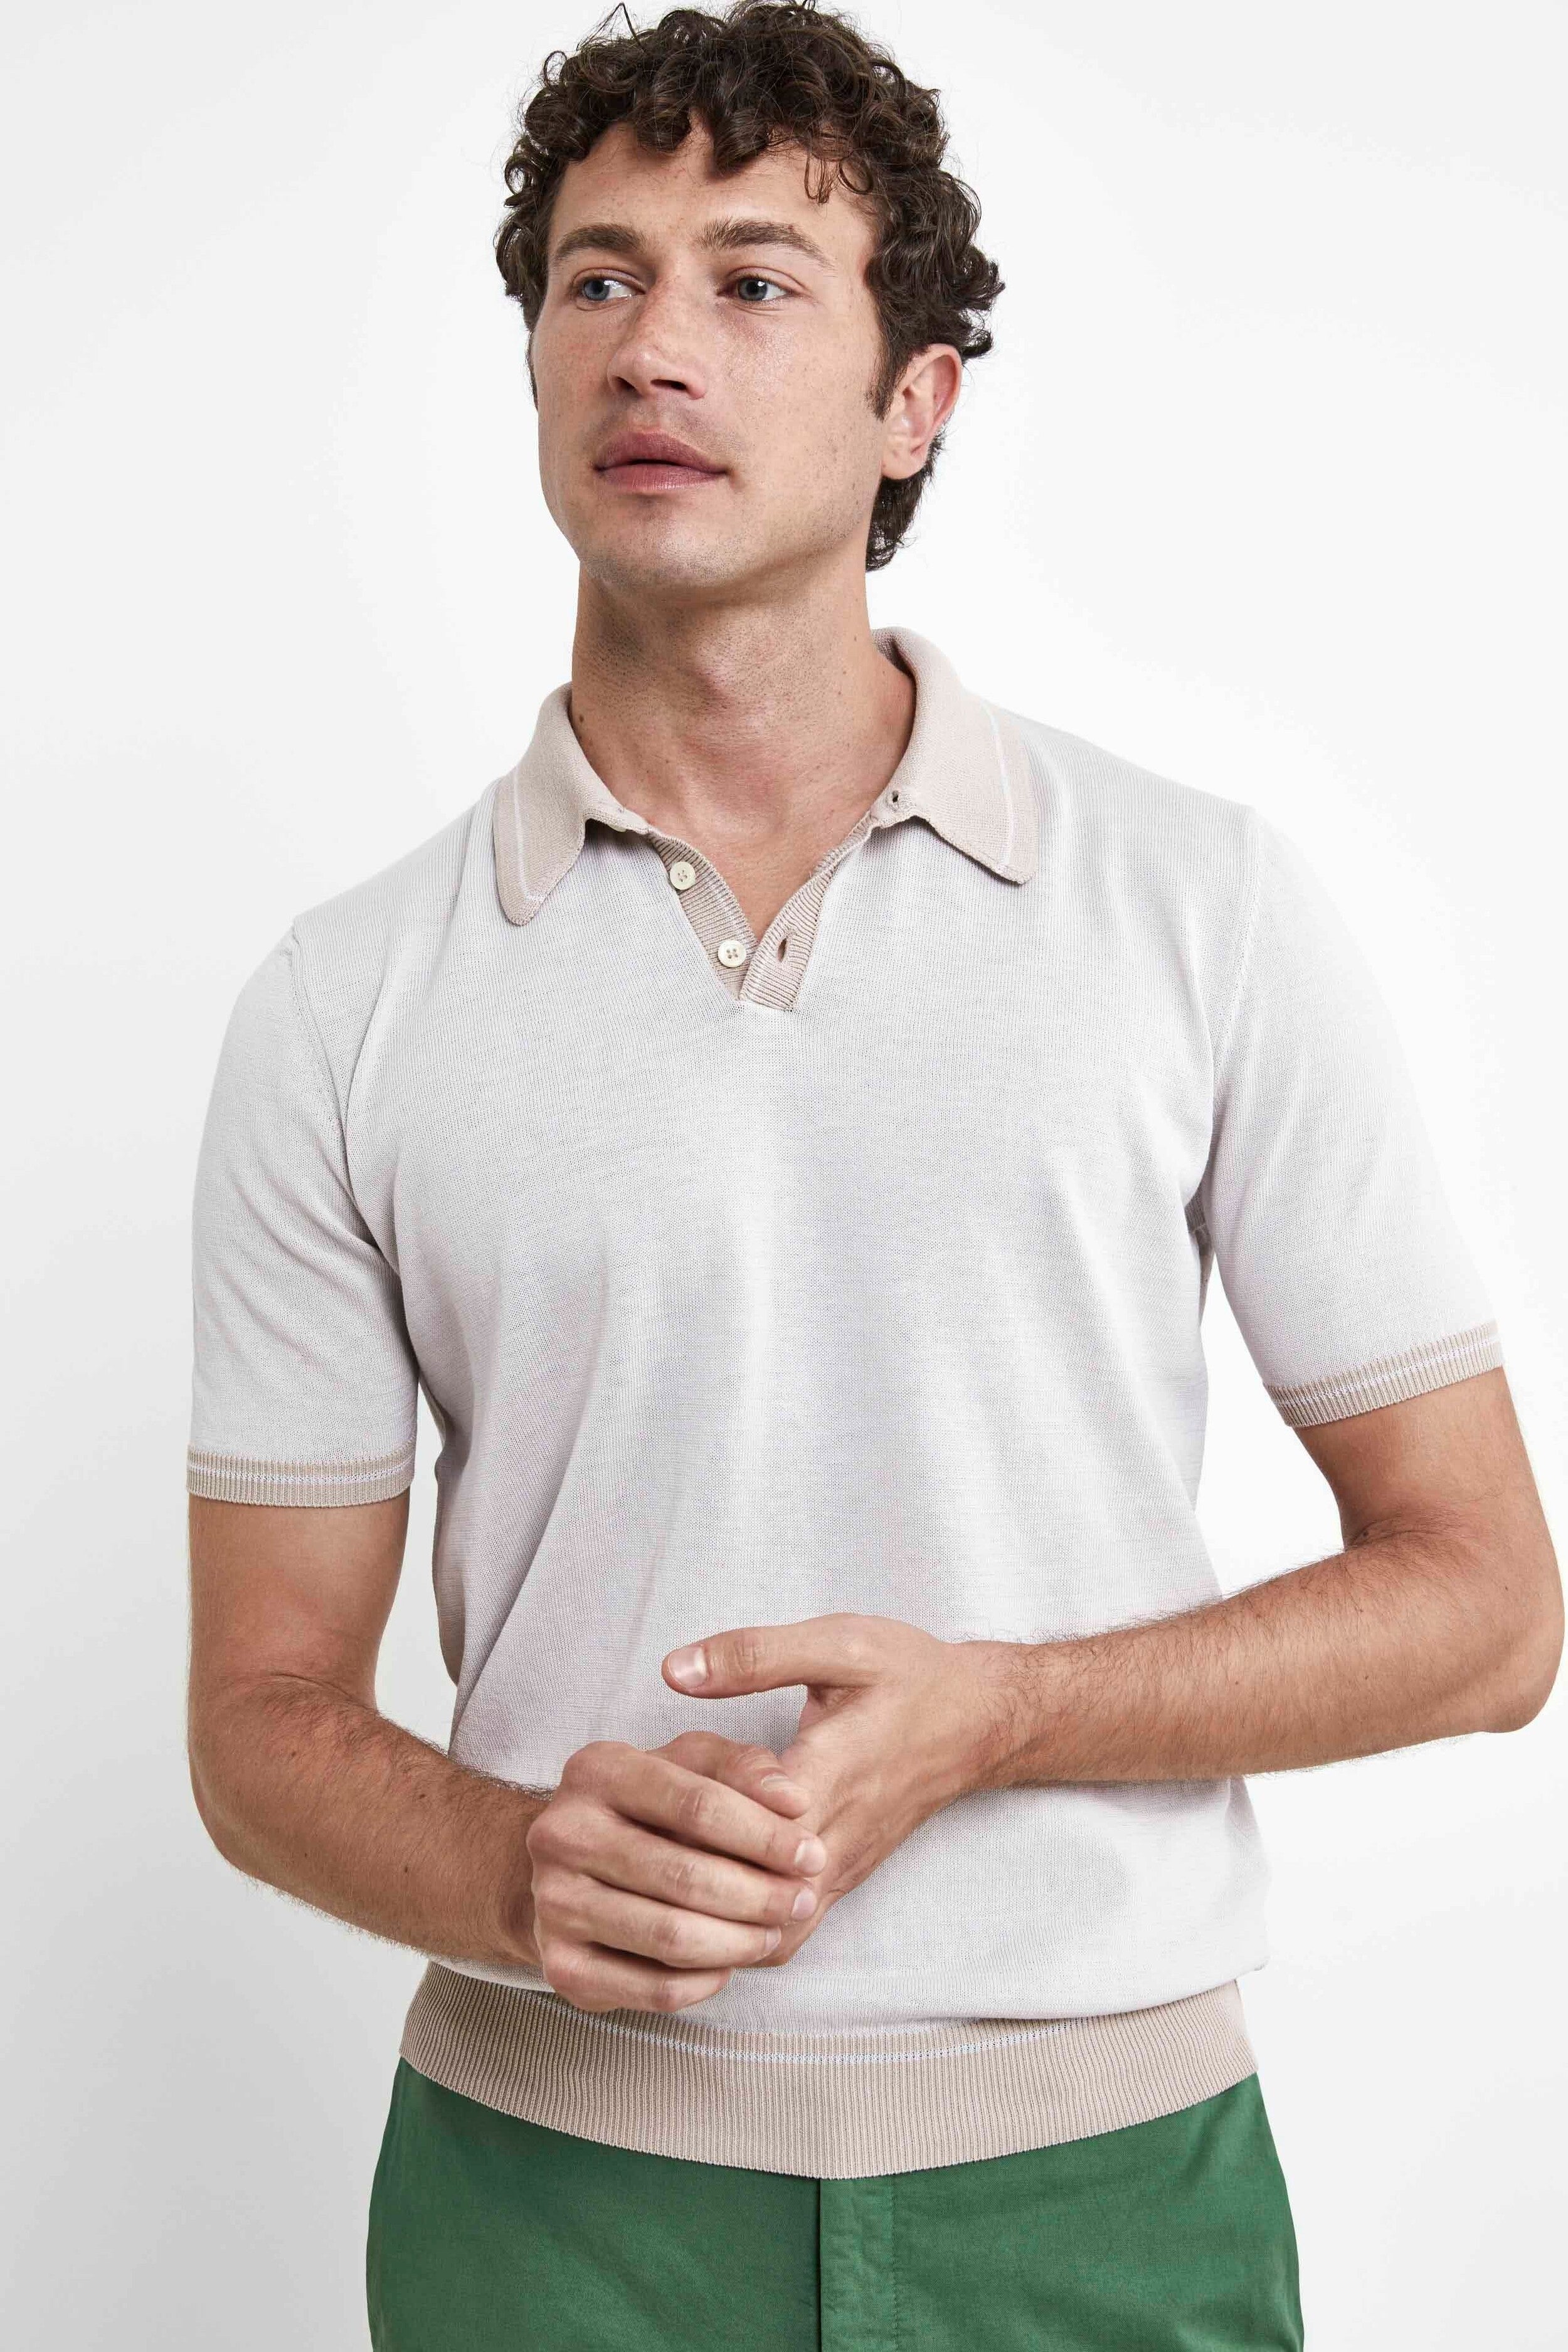 Cotton Knit Polo Shirt - Cream white